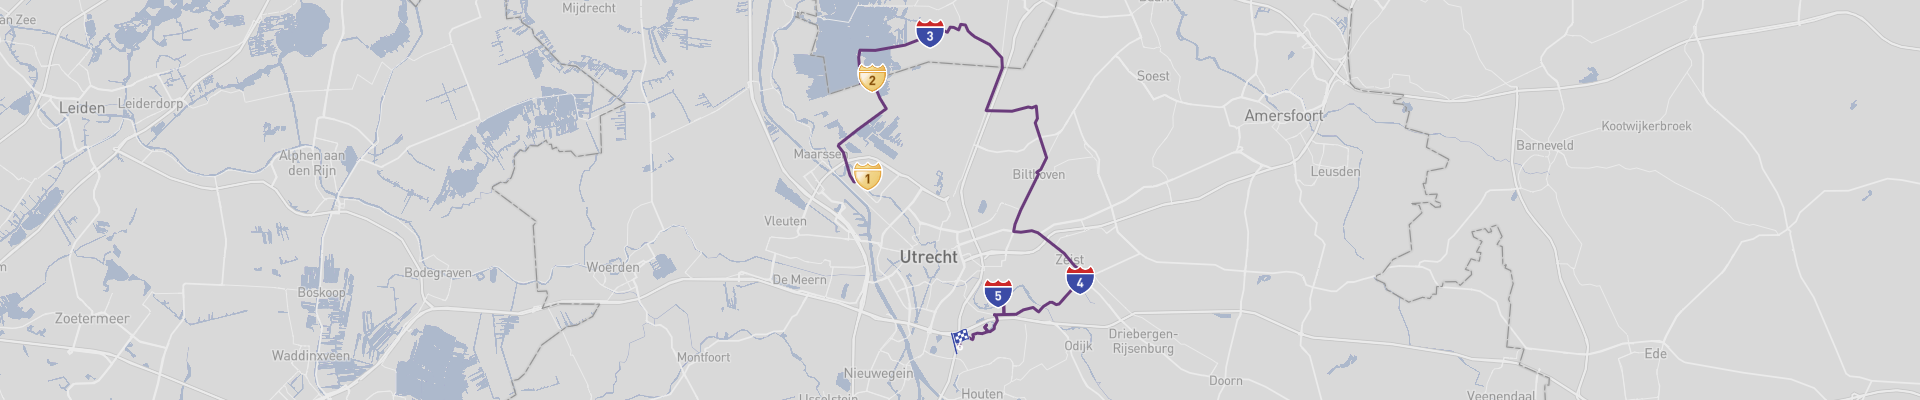 Utrecht's Route des Châteaux